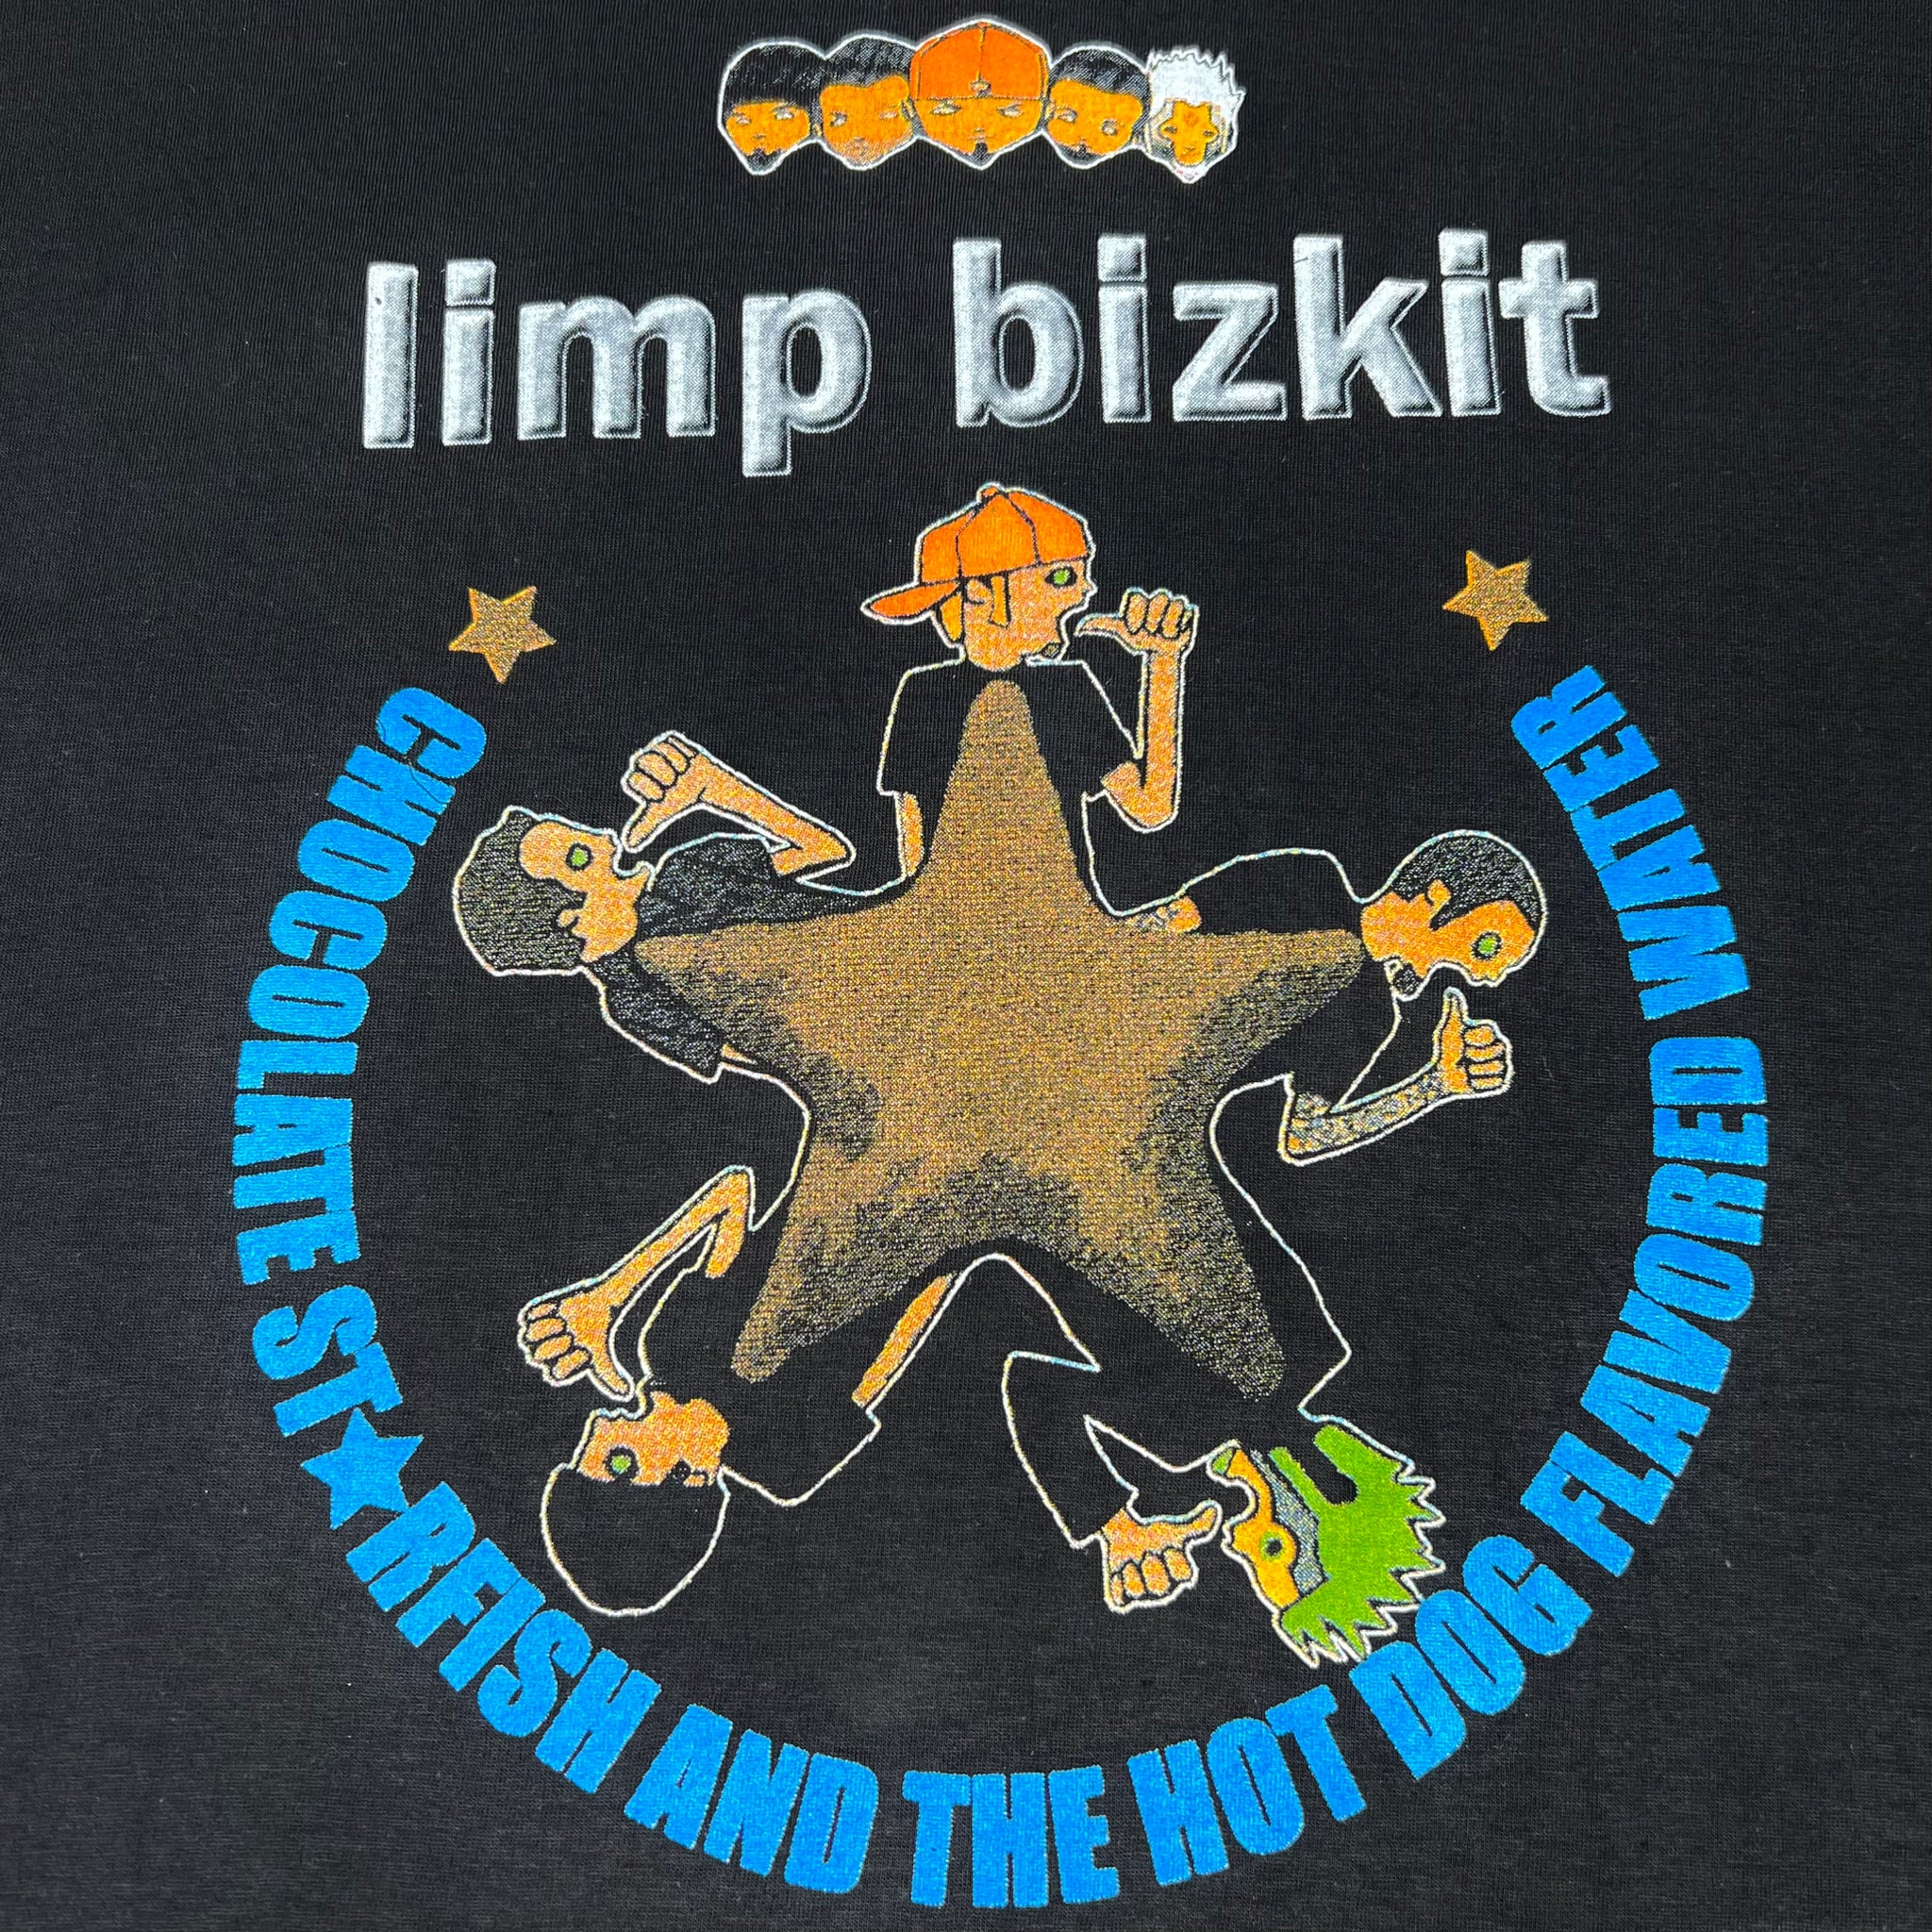 23 Years Ago: Limp Bizkit Explode With 'Chocolate Starfish